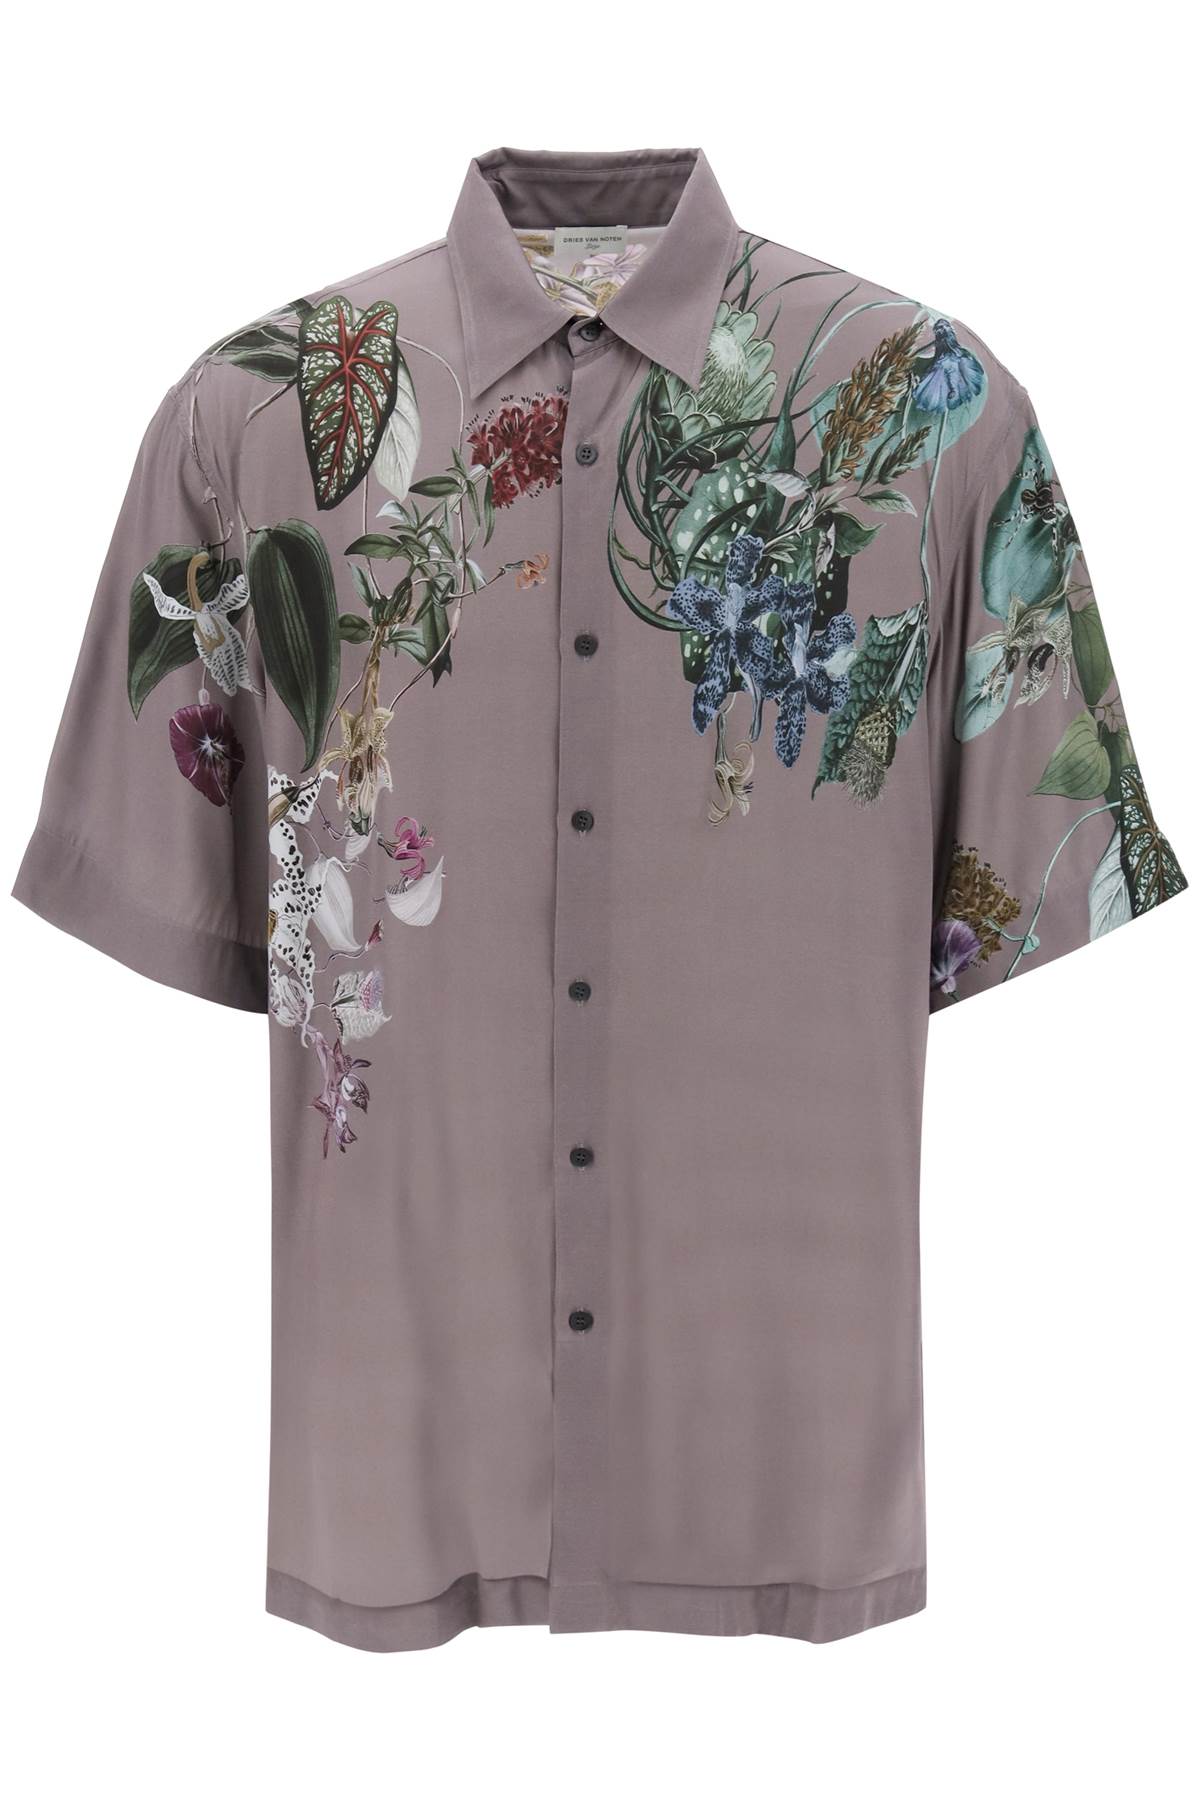 Dries Van Noten cassidye floral print short sleeve shirt CASSIDYE7092404